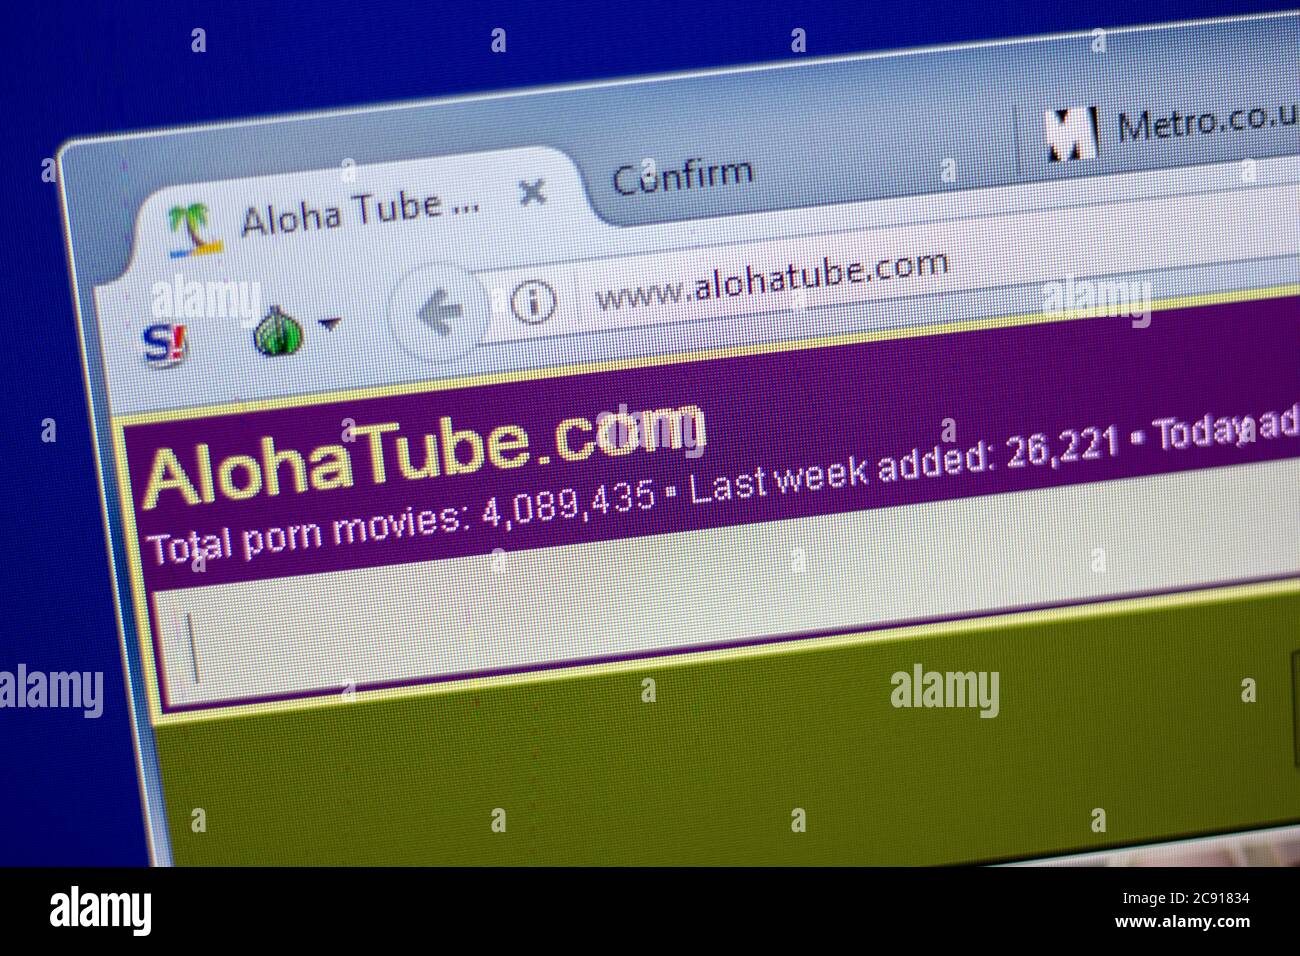 Aloha tube. com